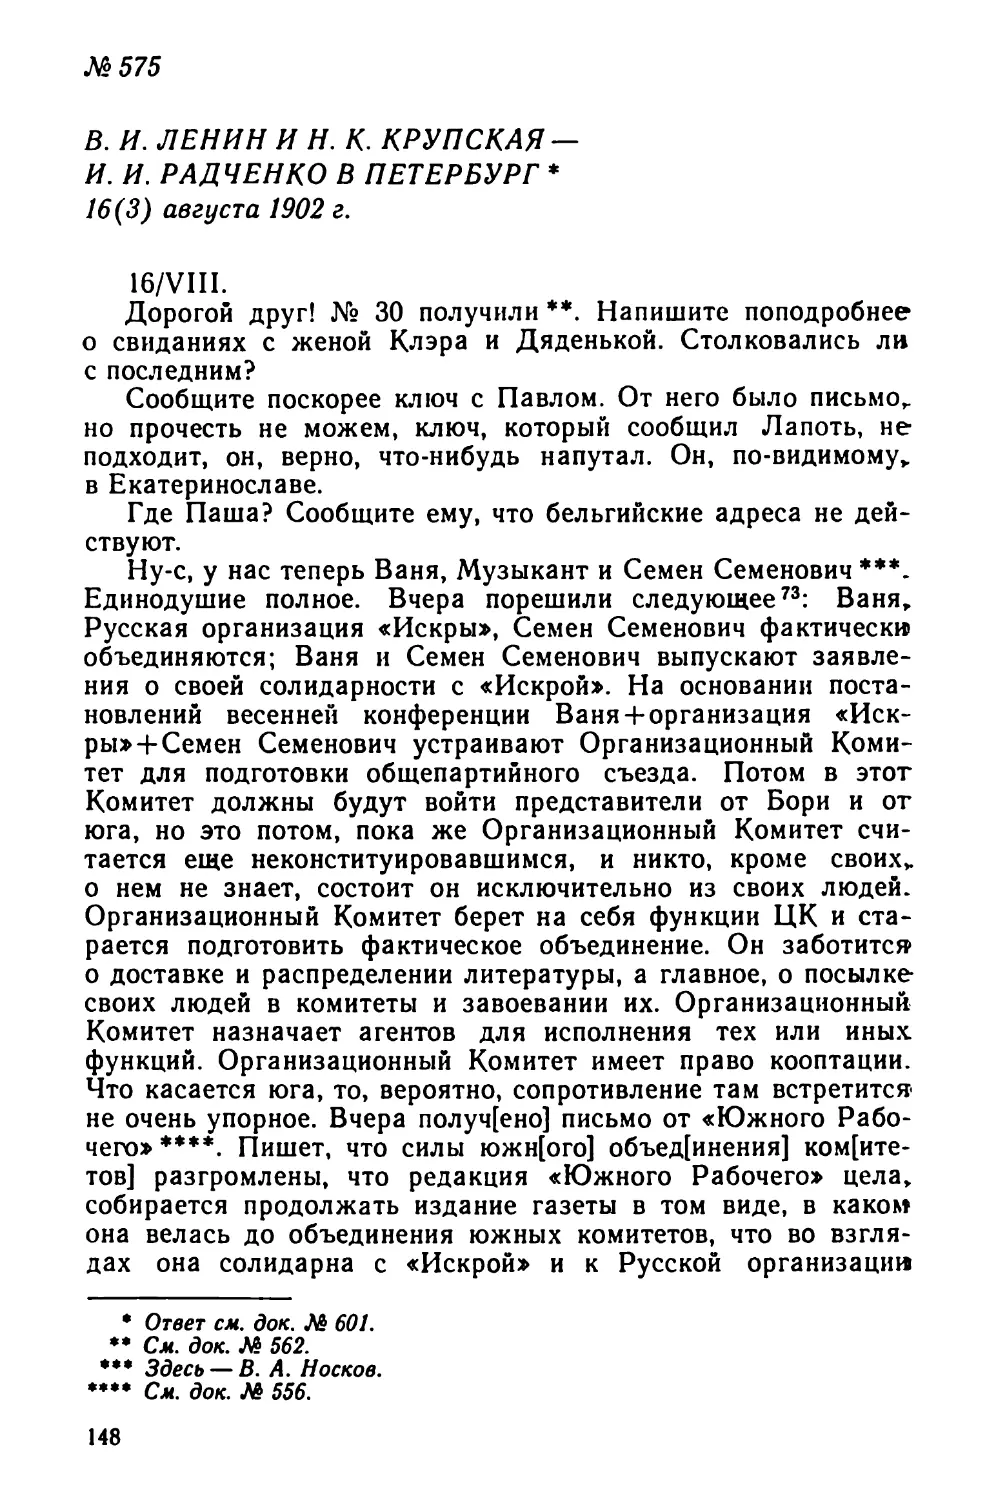 № 575 В. И. Ленин и Н. К. Крупская — И. И. Радченко в Петербург. 16 августа